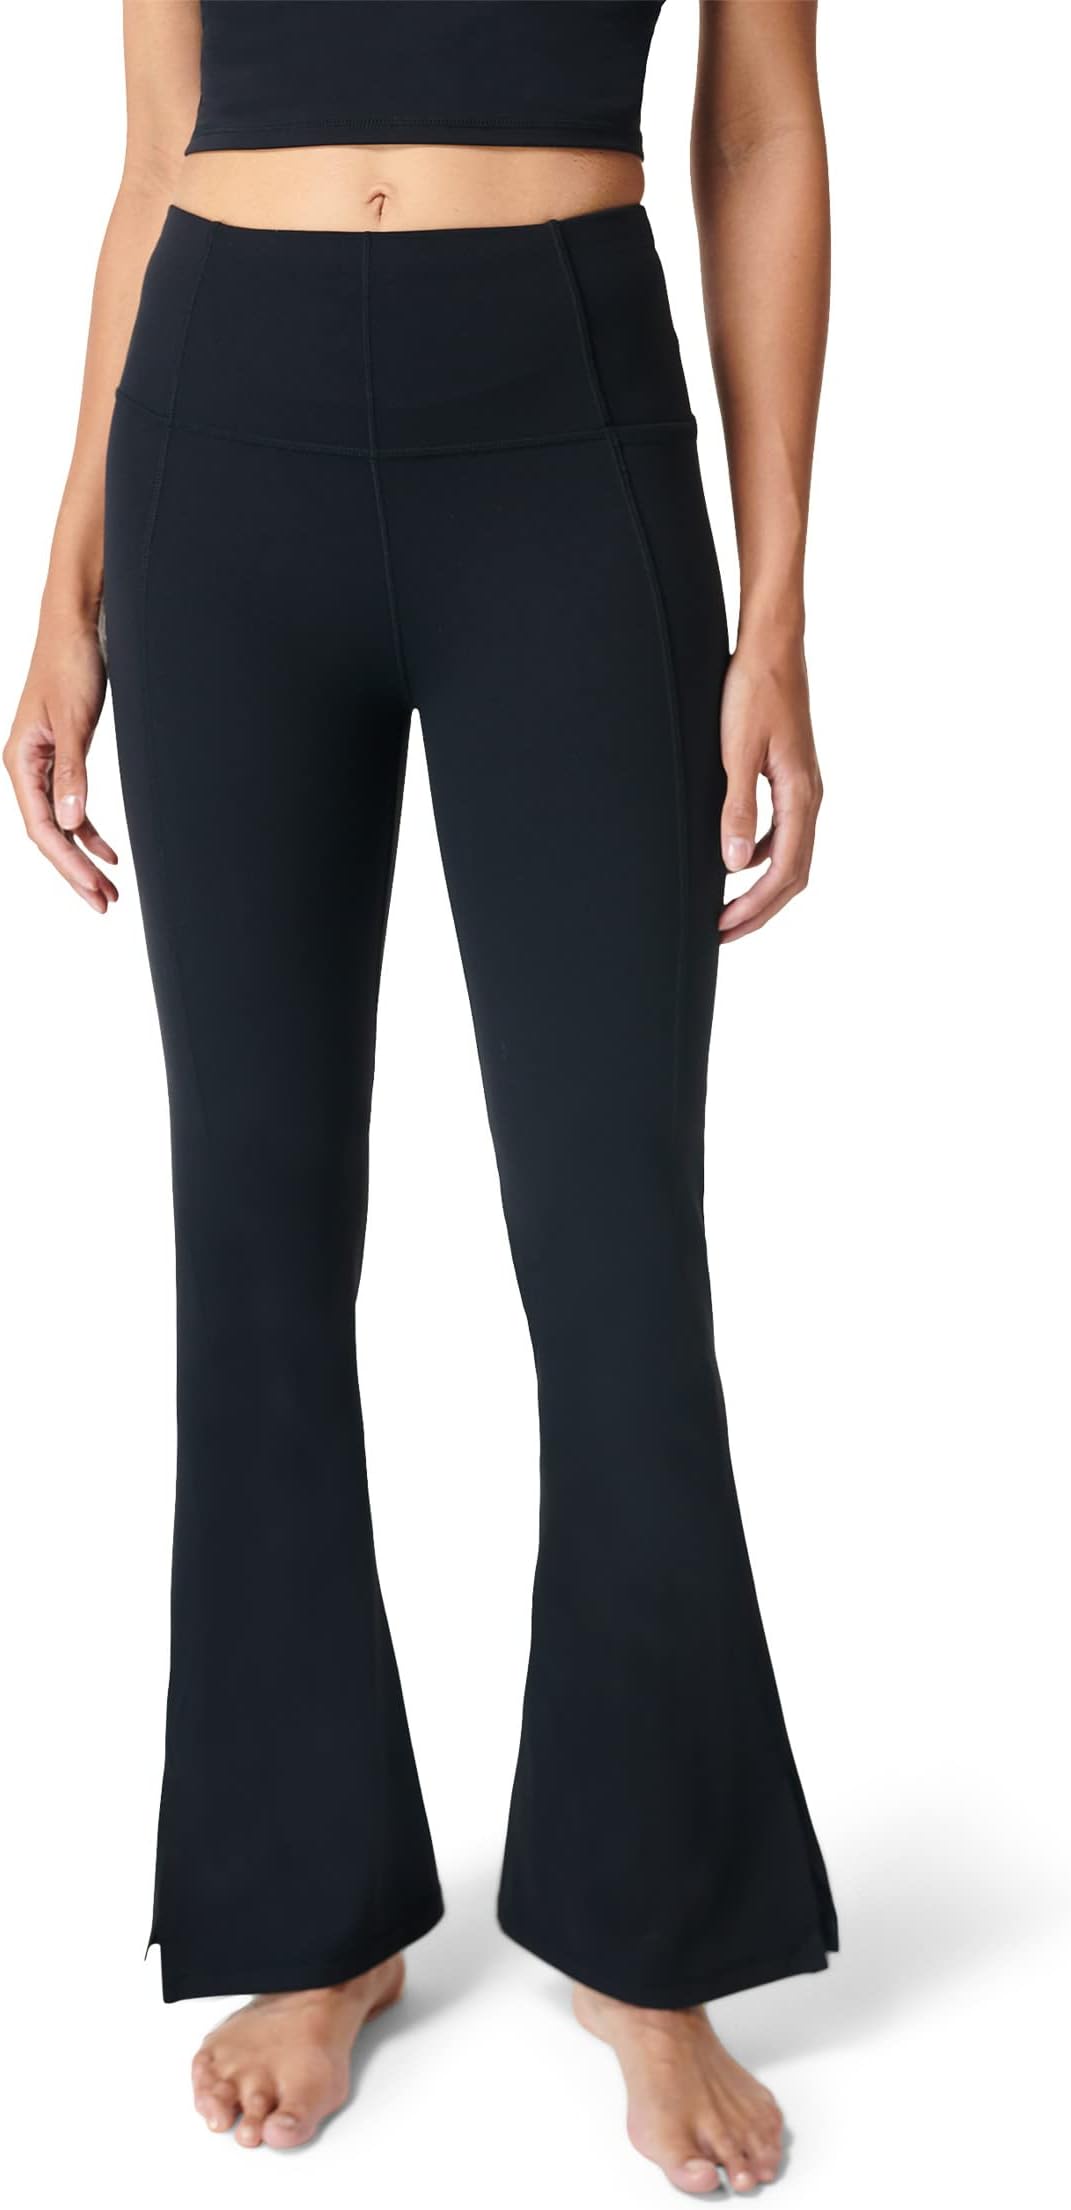 Супермягкие расклешенные брюки для йоги шириной 30 дюймов Sweaty Betty, черный